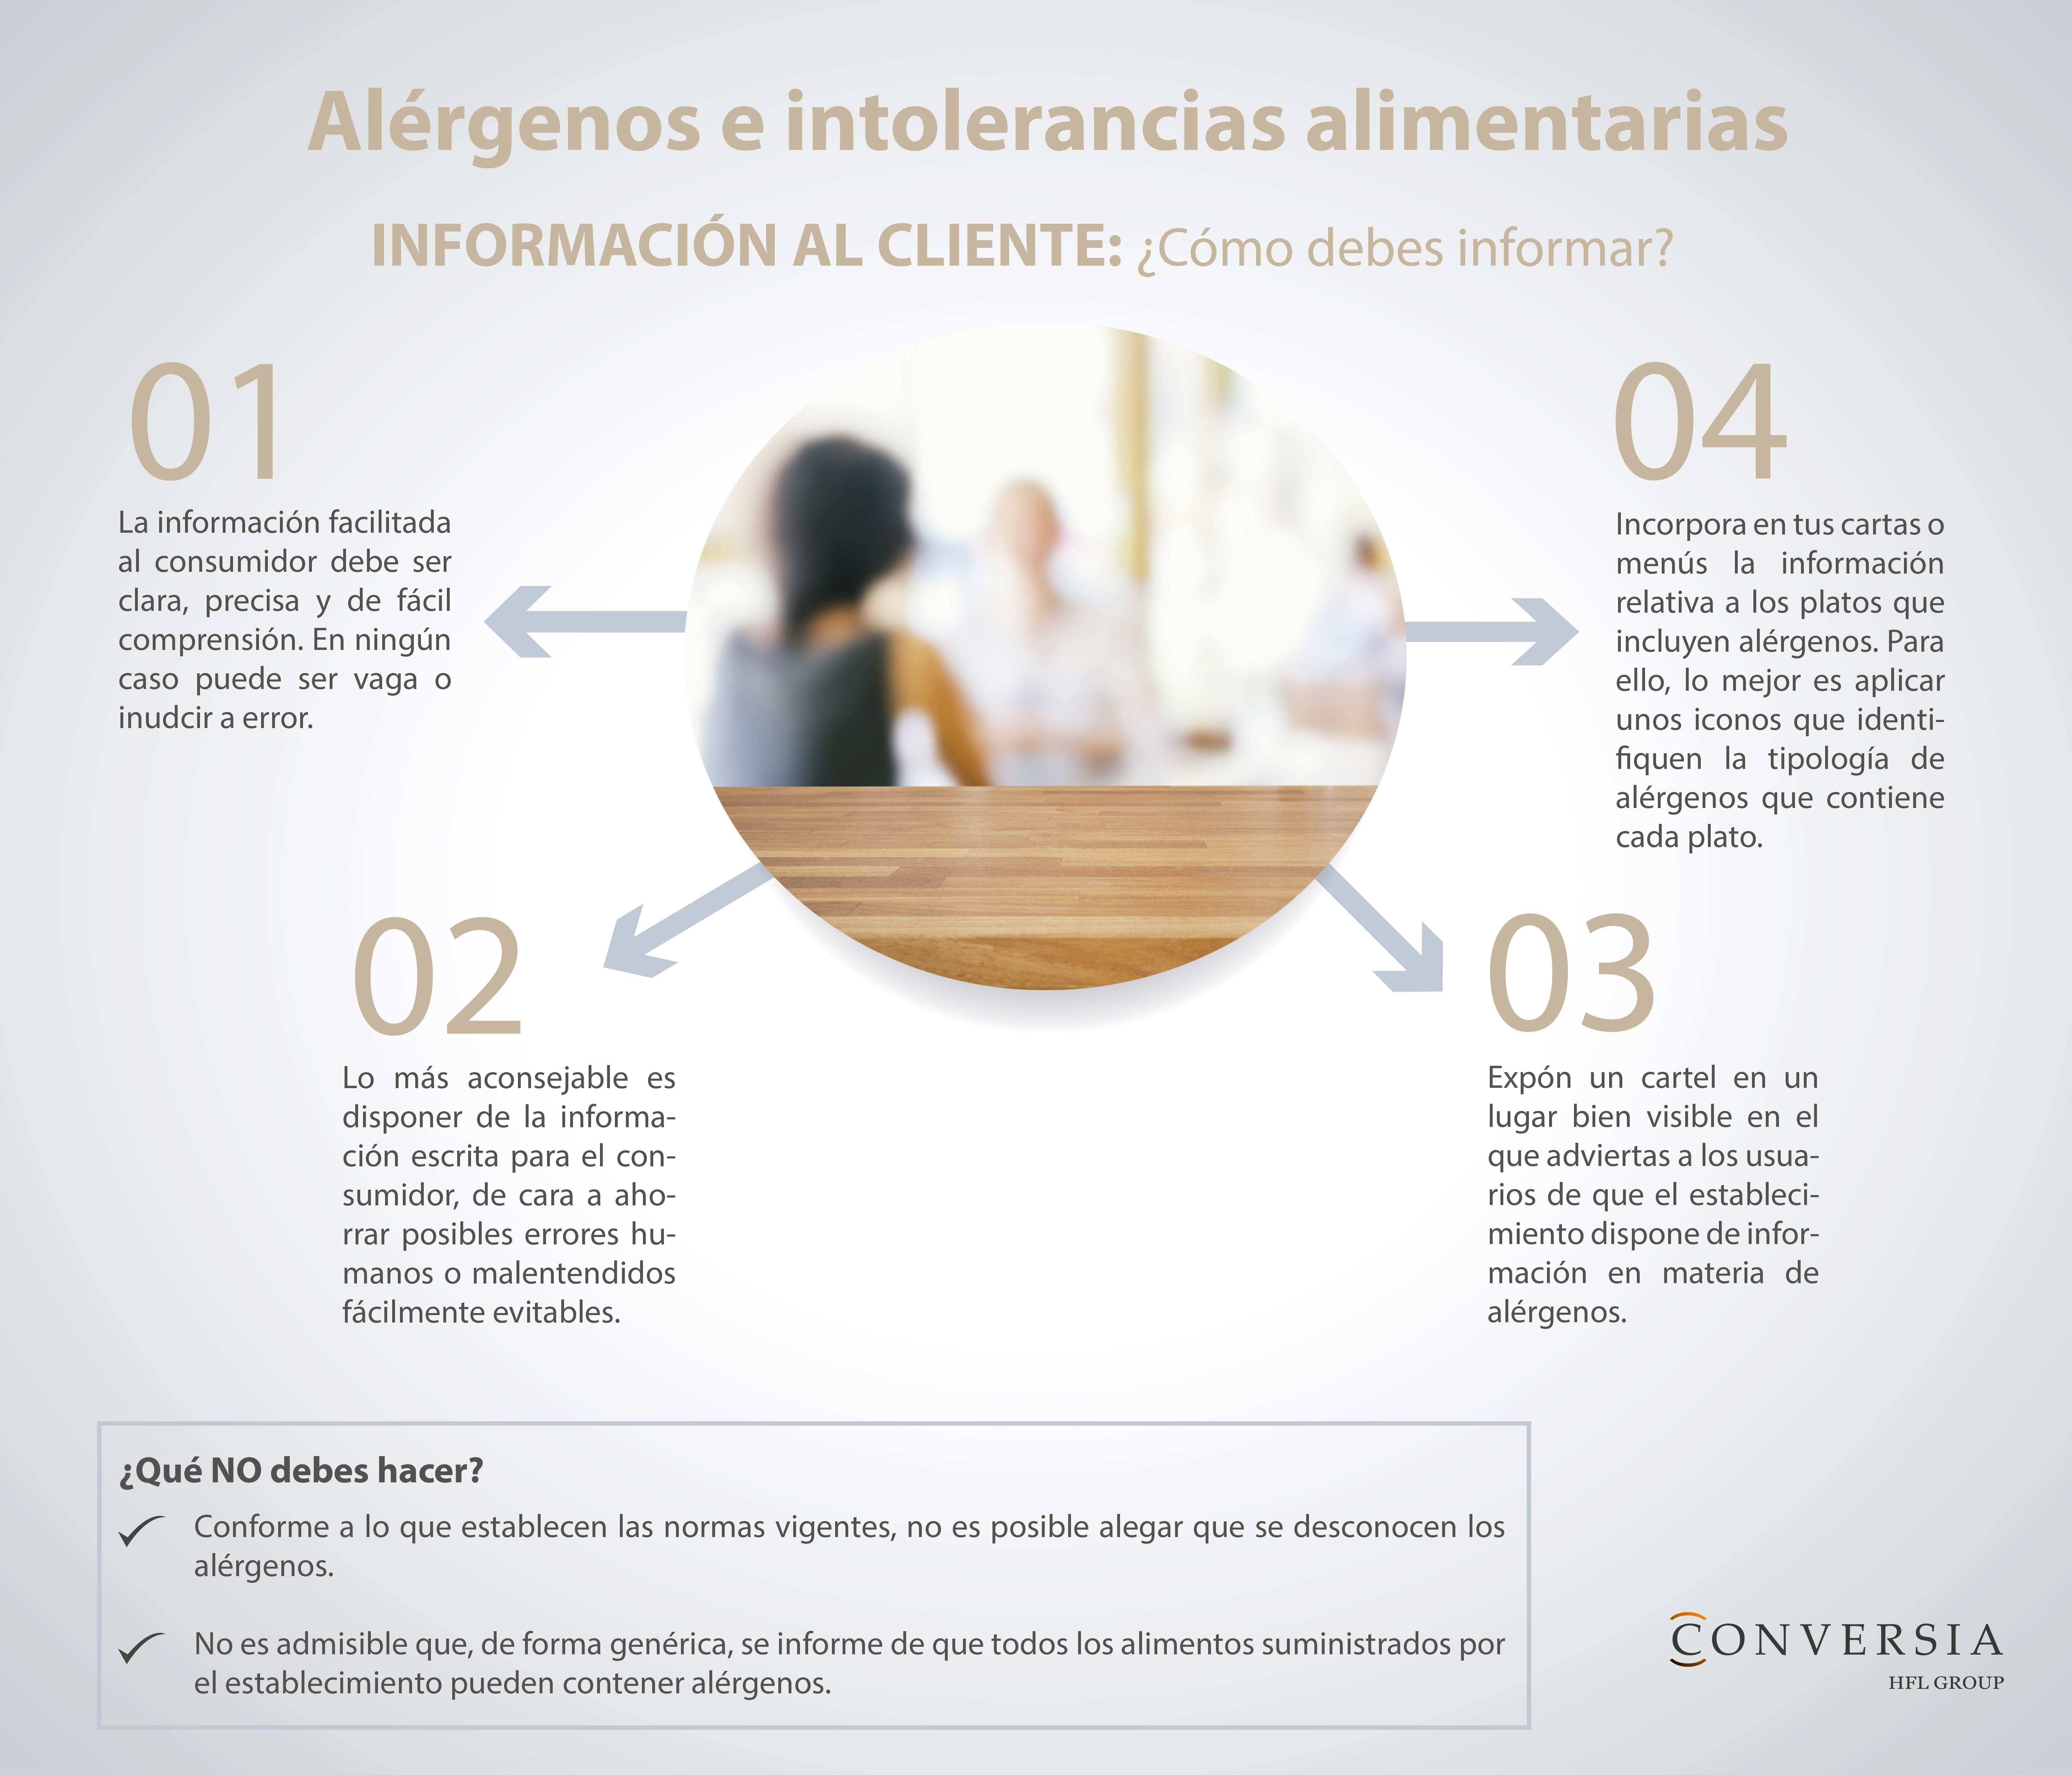 Infografía de Conversia con consejos para informar al cliente acerca de los alérgenos e intolerancias alimentarias 